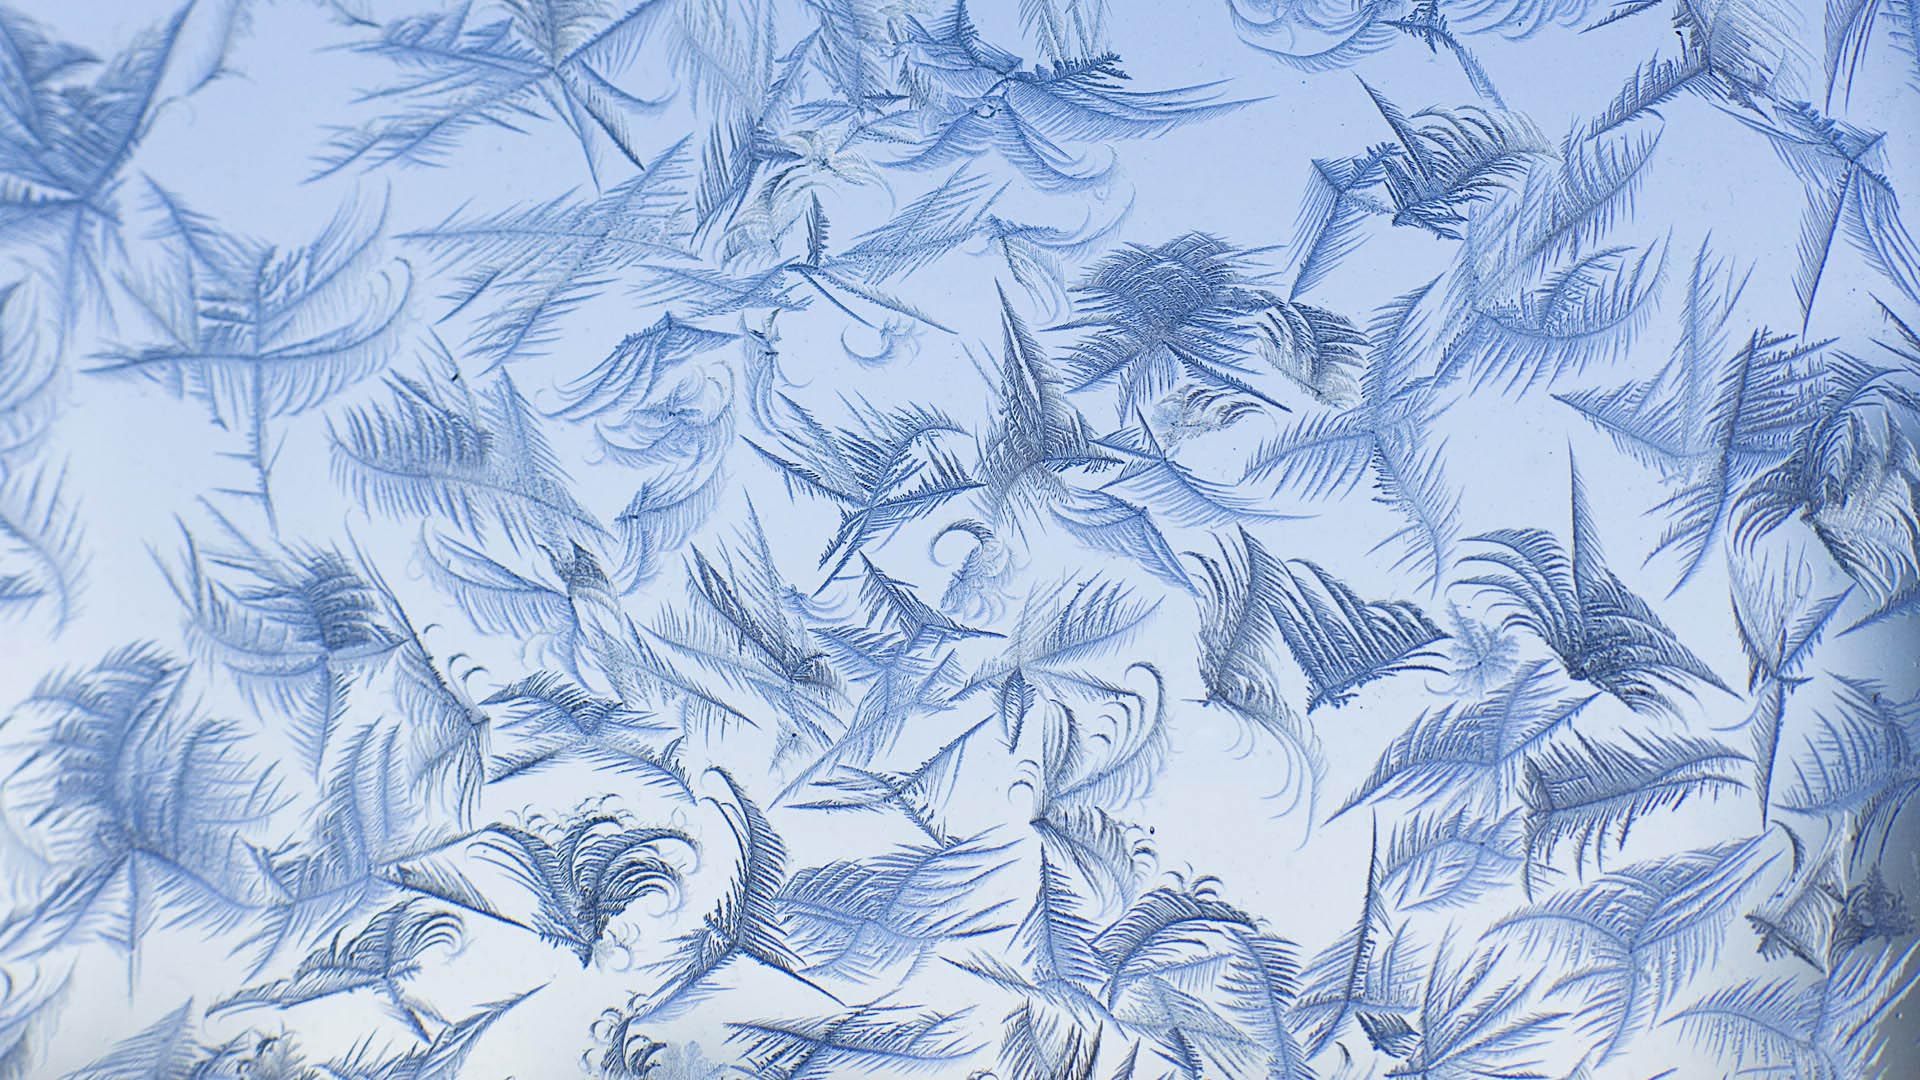 Frost patterns on a window - Macro